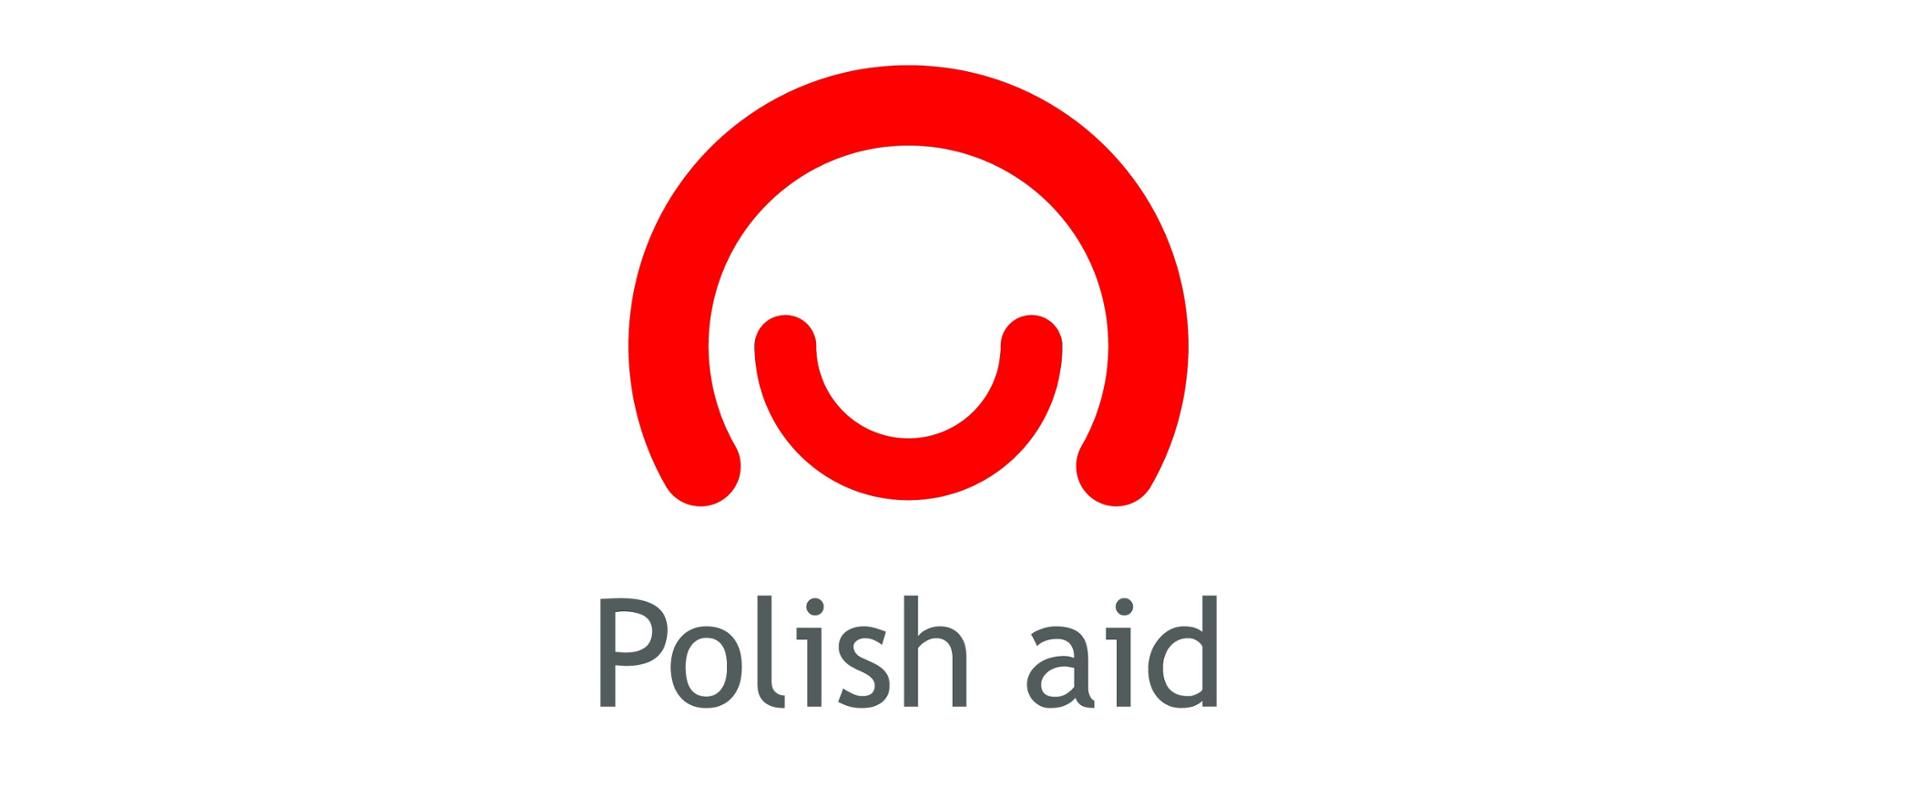 polska pomoc ang